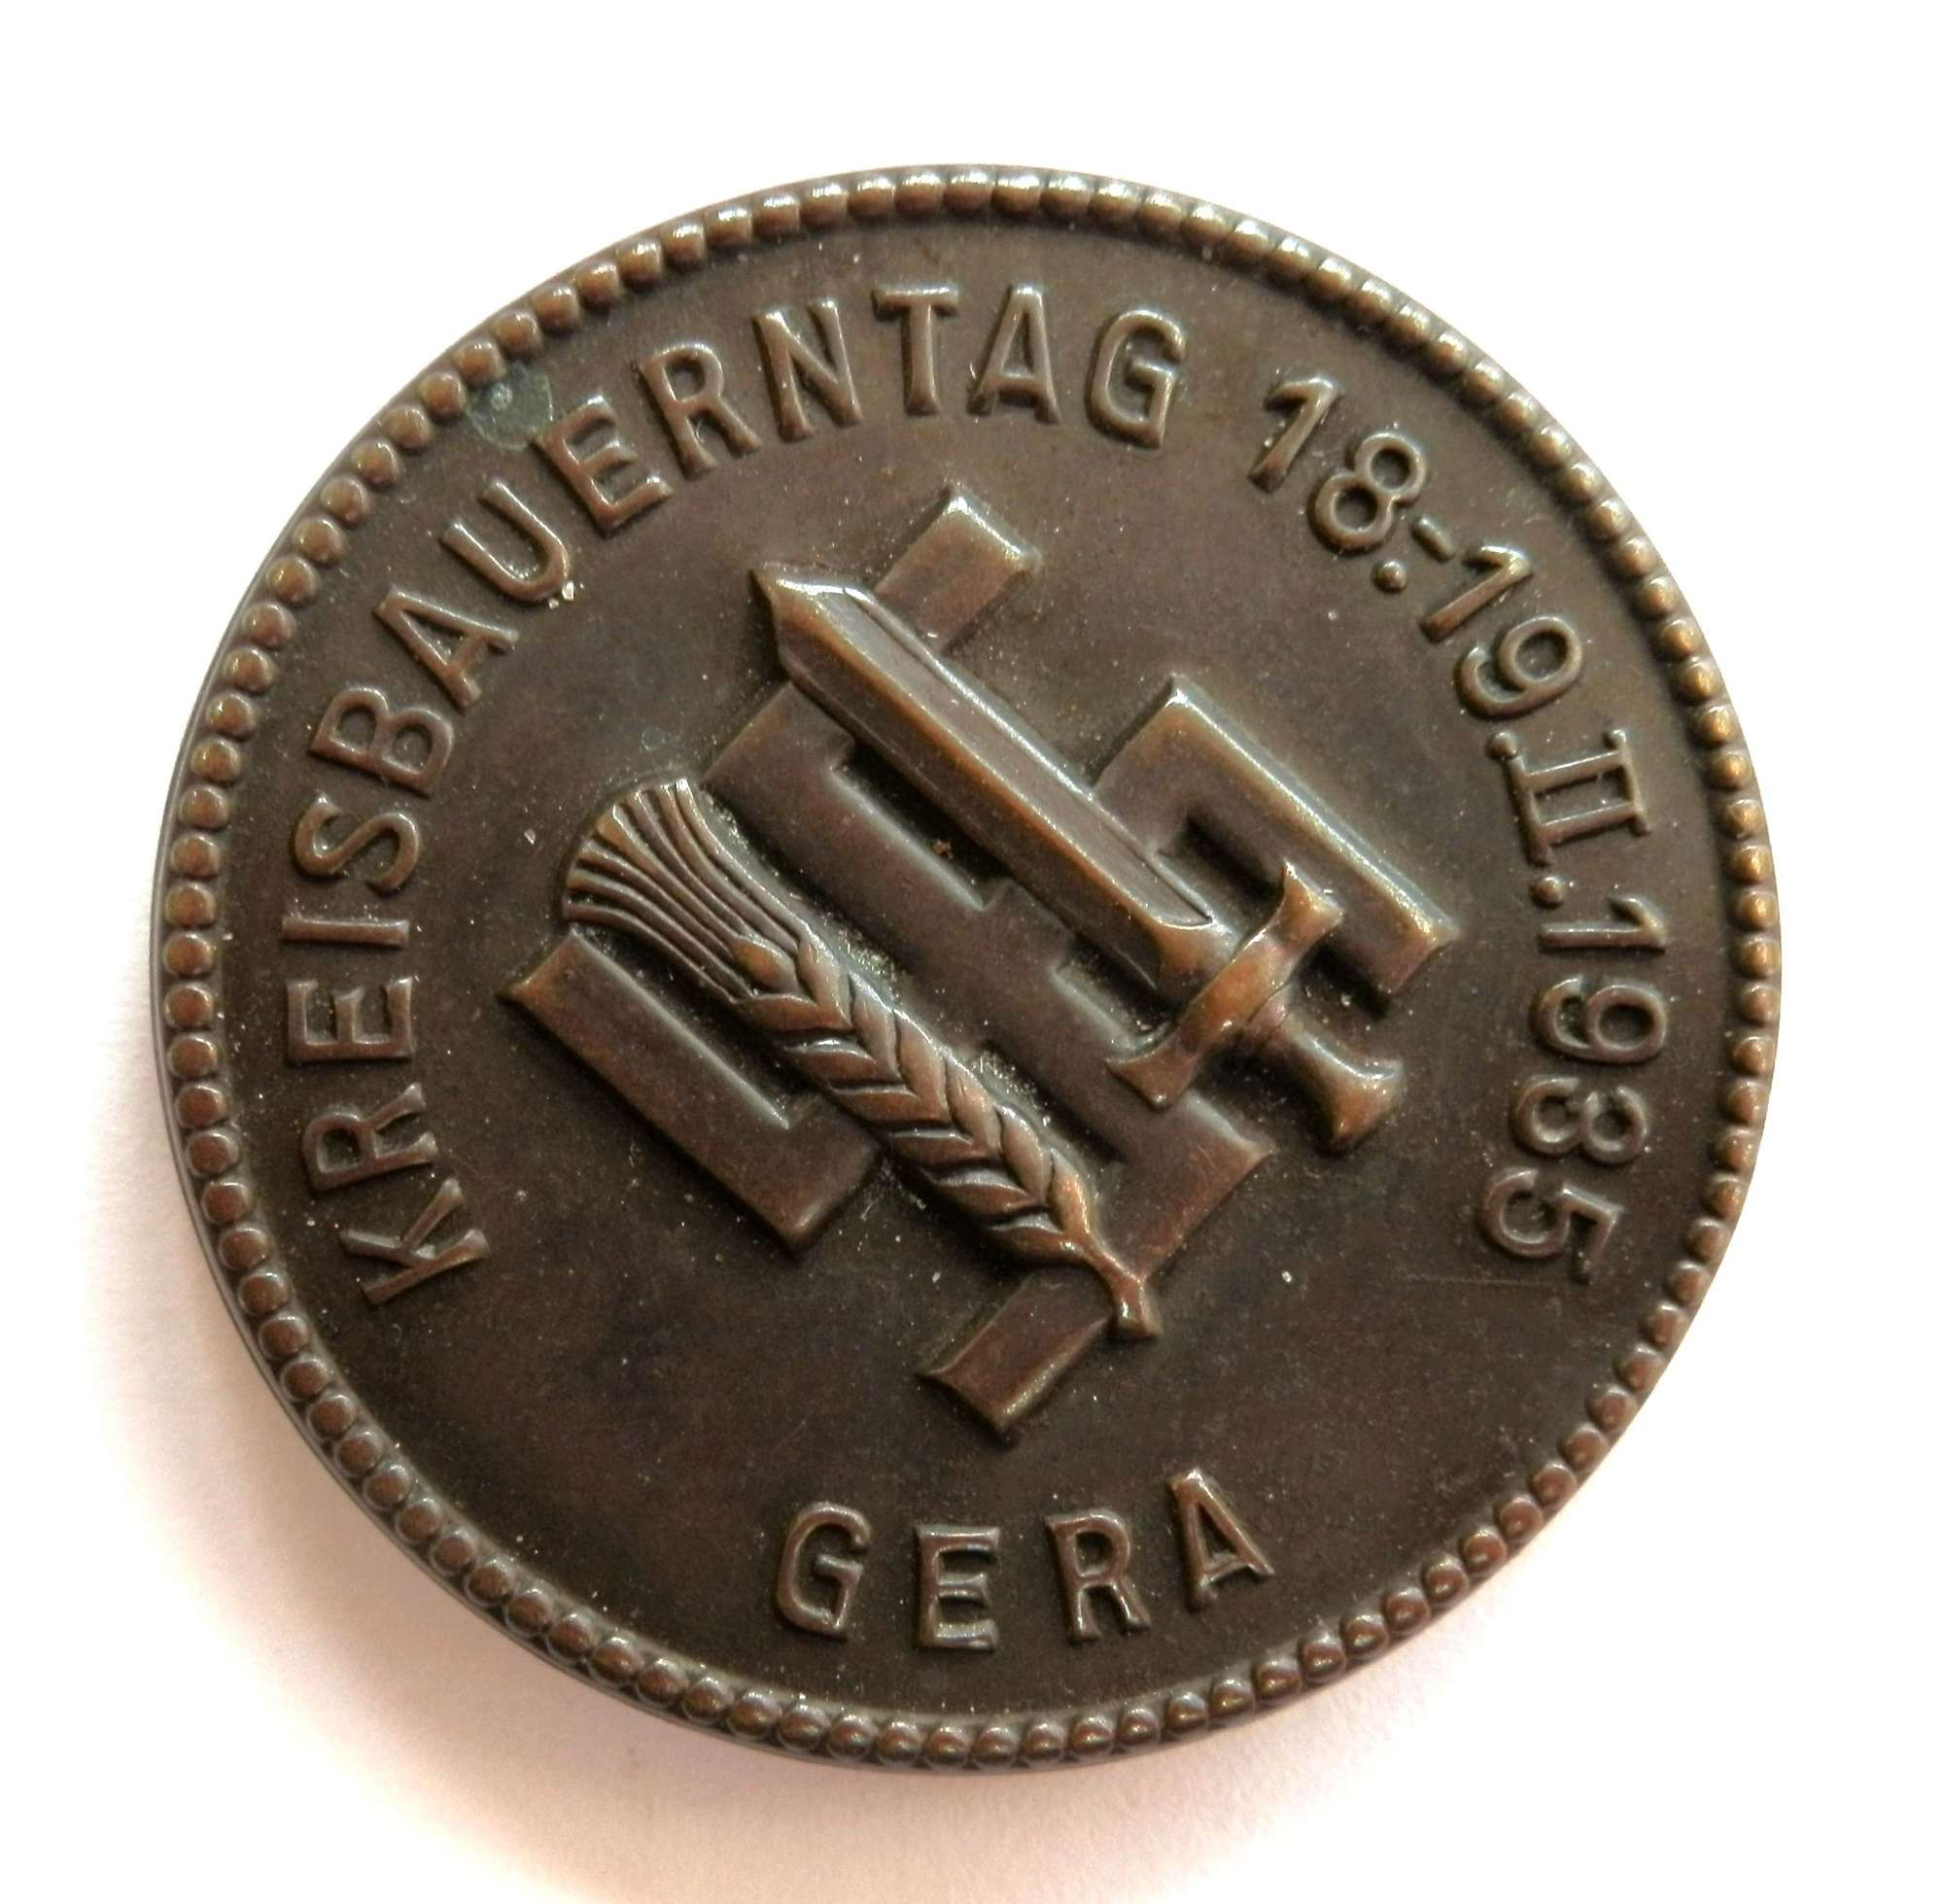 Kreisbauerntag 1:19.11.1935 Gera. Day Badge.